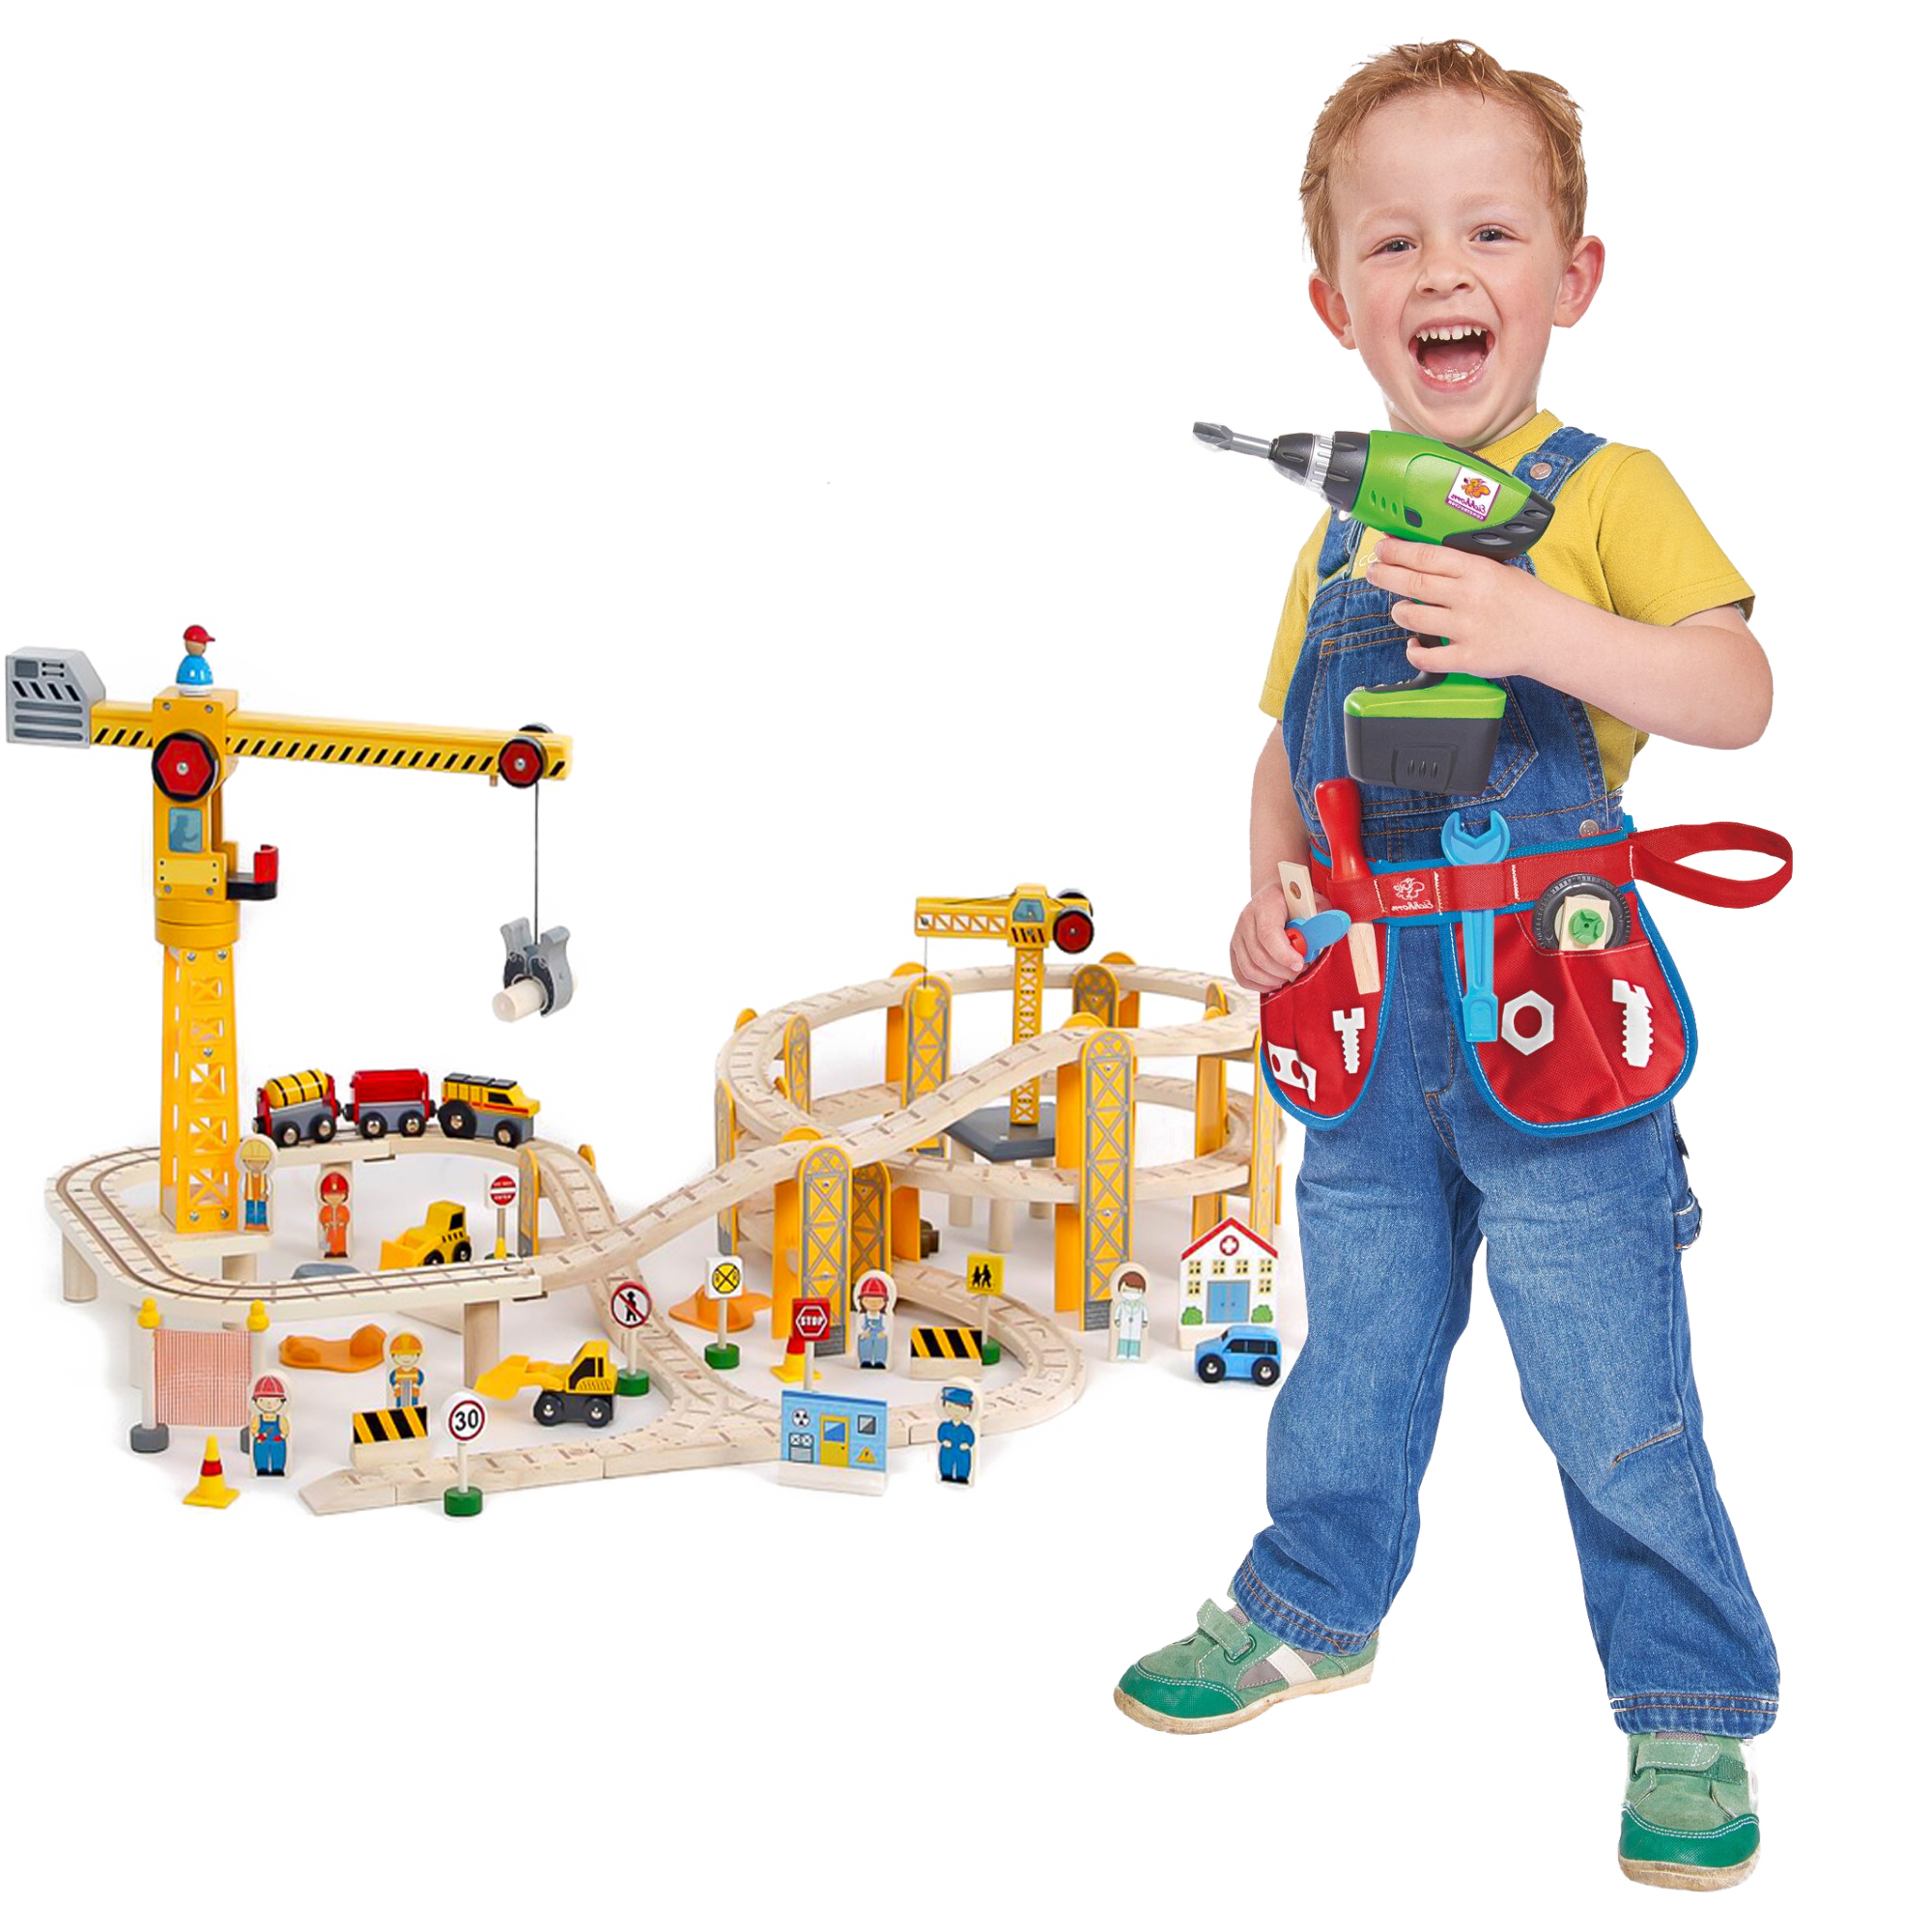 Kid Toys, plastic drill set, tools